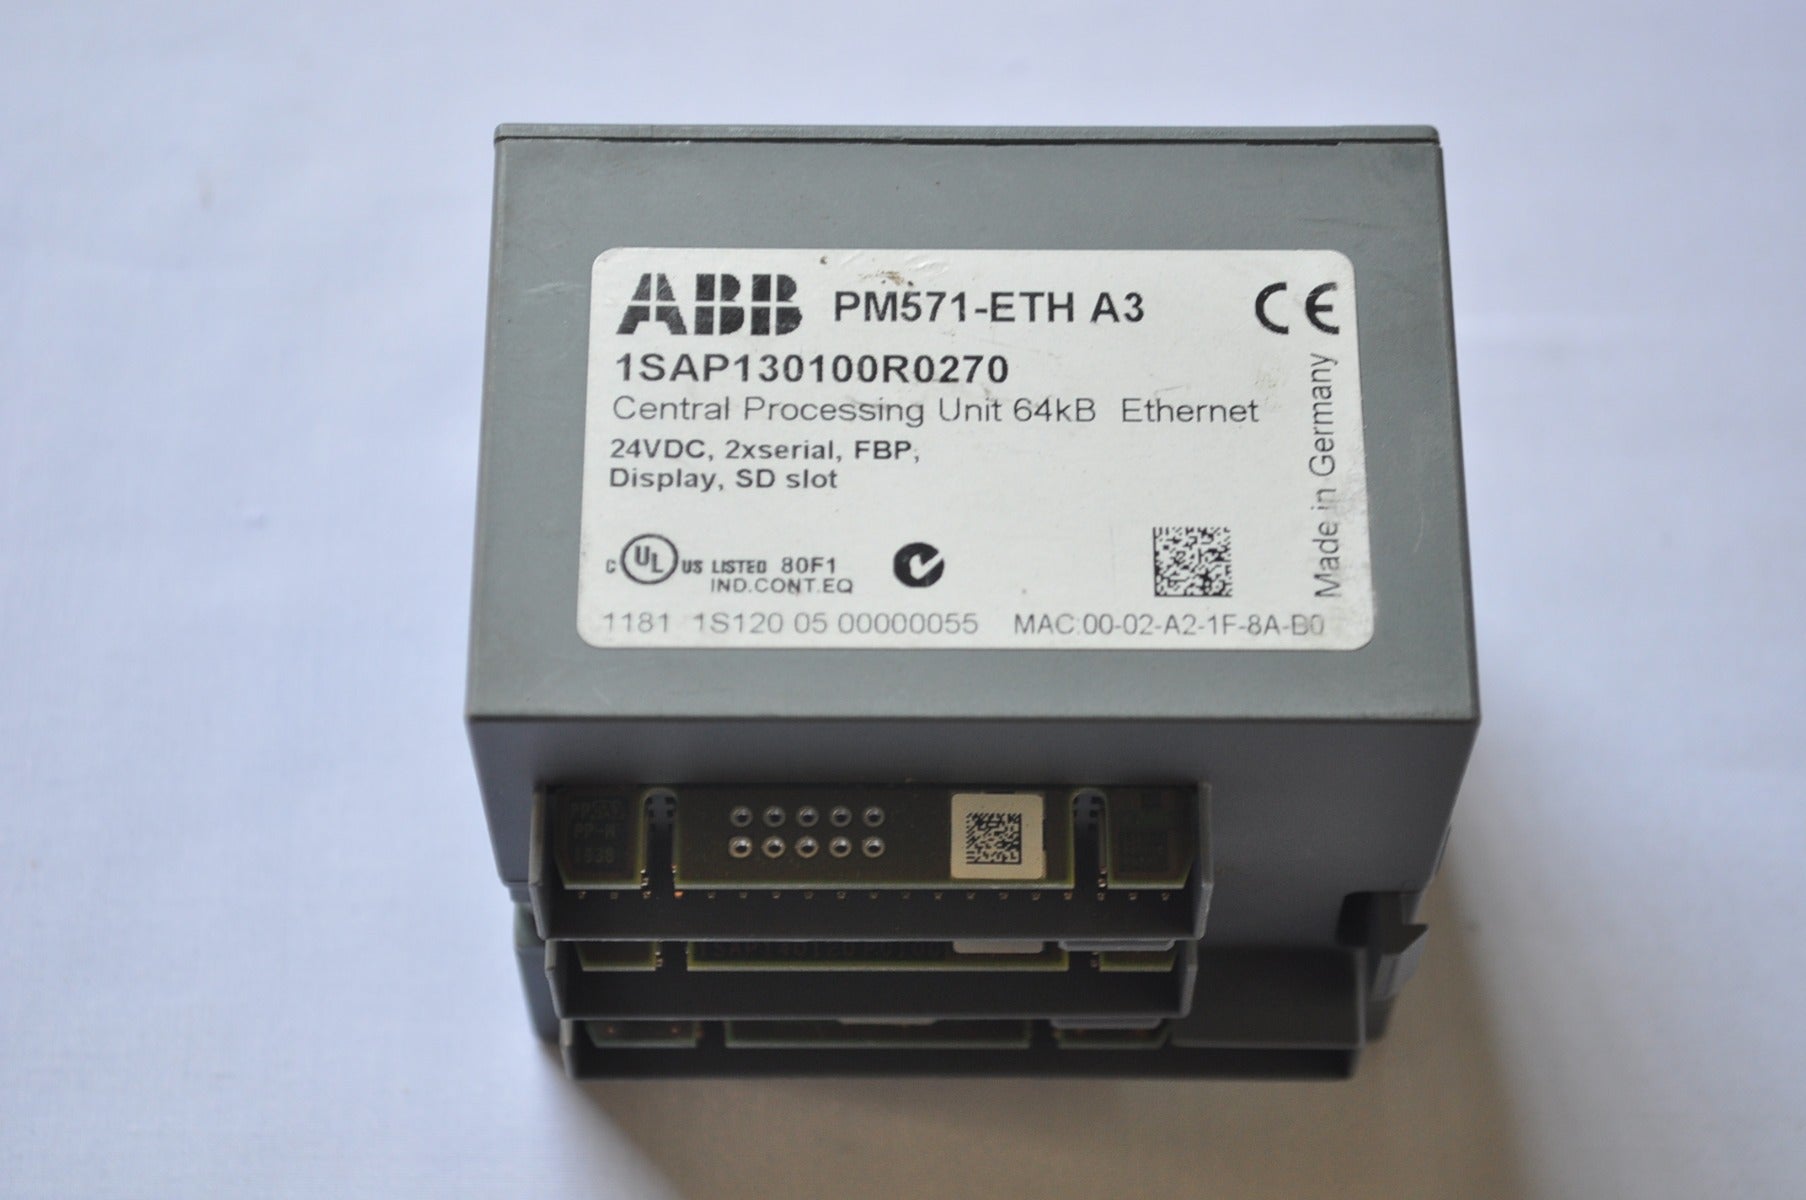 Abb Pm571-eth A3 1Sap130100R0270 Cpu 64Kb Ethernet Plc Module